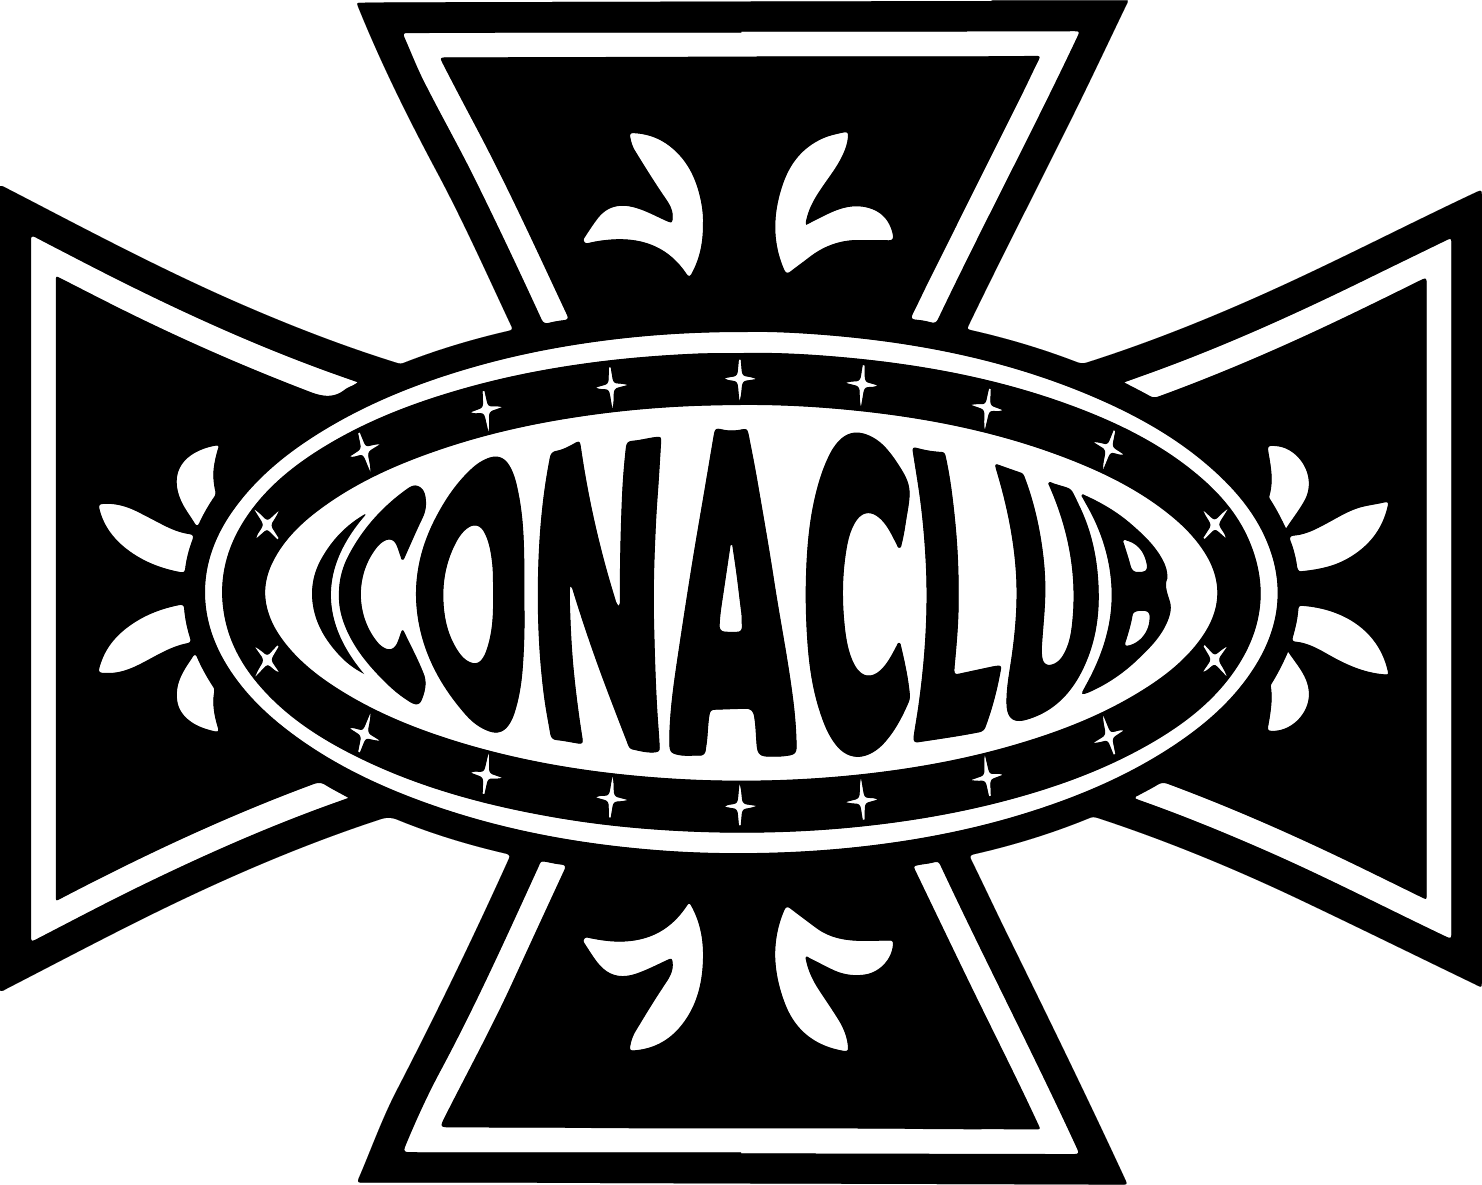 Iconaclub